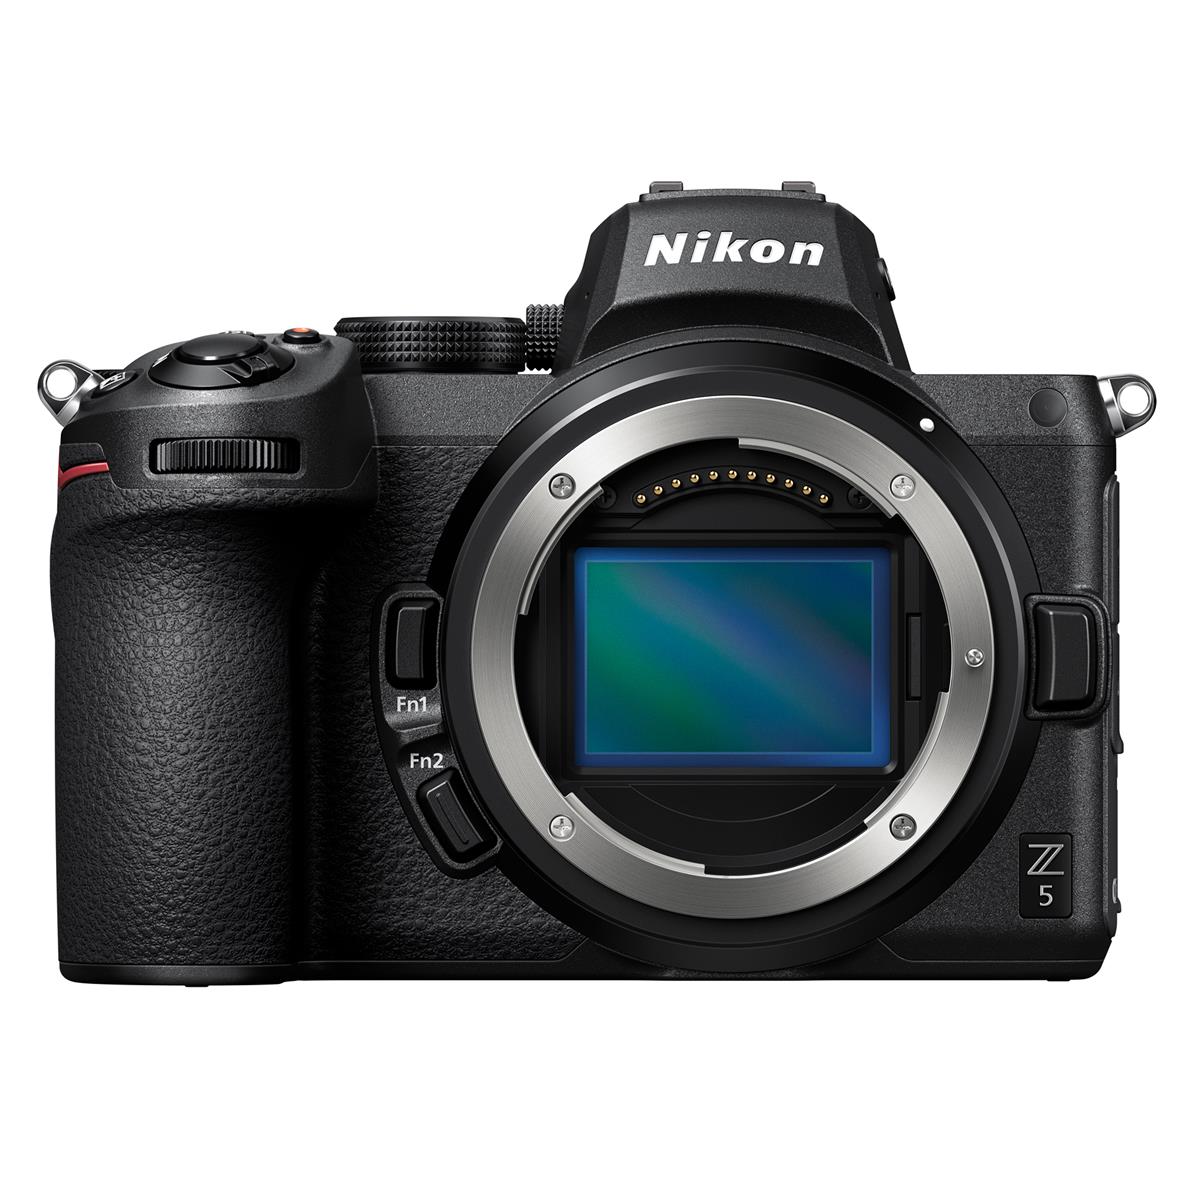 Image of Nikon Z5 Full Frame Mirrorless Camera